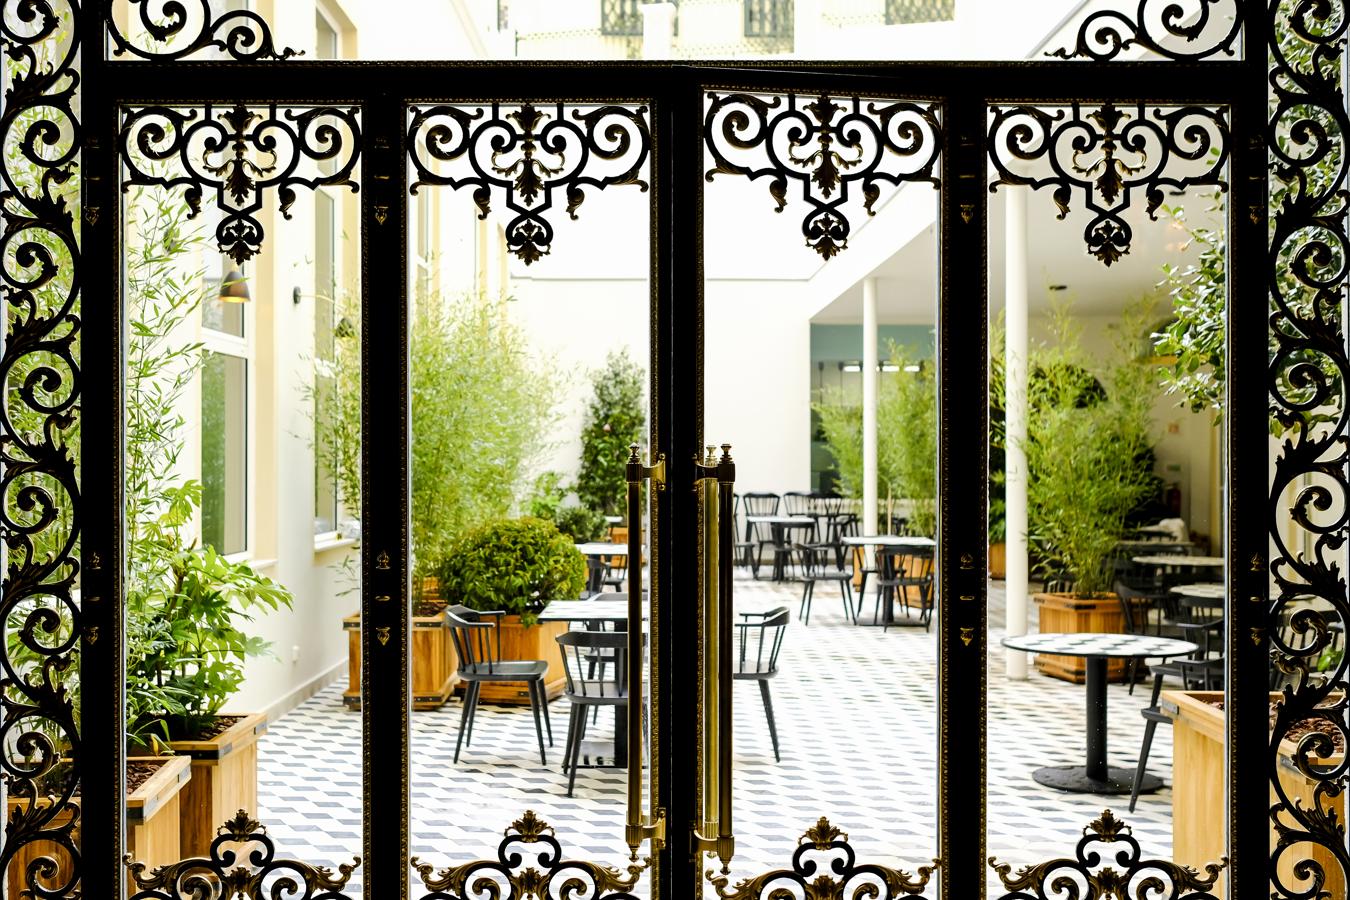 Mejor hotel al que volver. Ubicado en pleno centro de Oporto, el hotel portugués Infante Sagres ha sido reformado a principios de 2018, alberga el recién inaugurado Vogue Café y cuenta con sofisticadas zonas comunes con lámparas de araña de época.